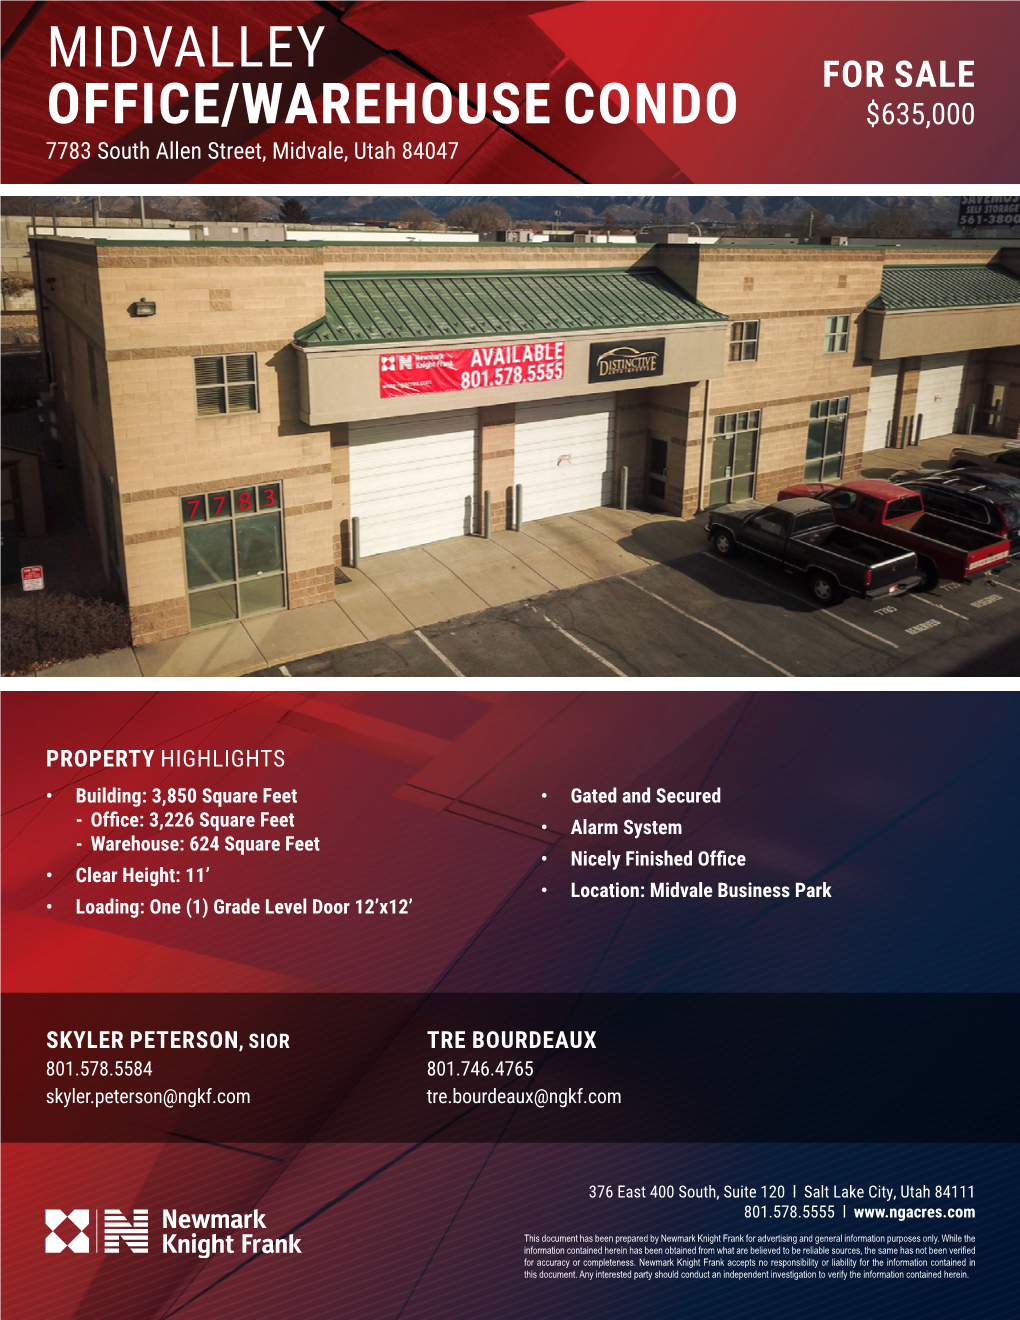 Midvalley Office/Warehouse Condo